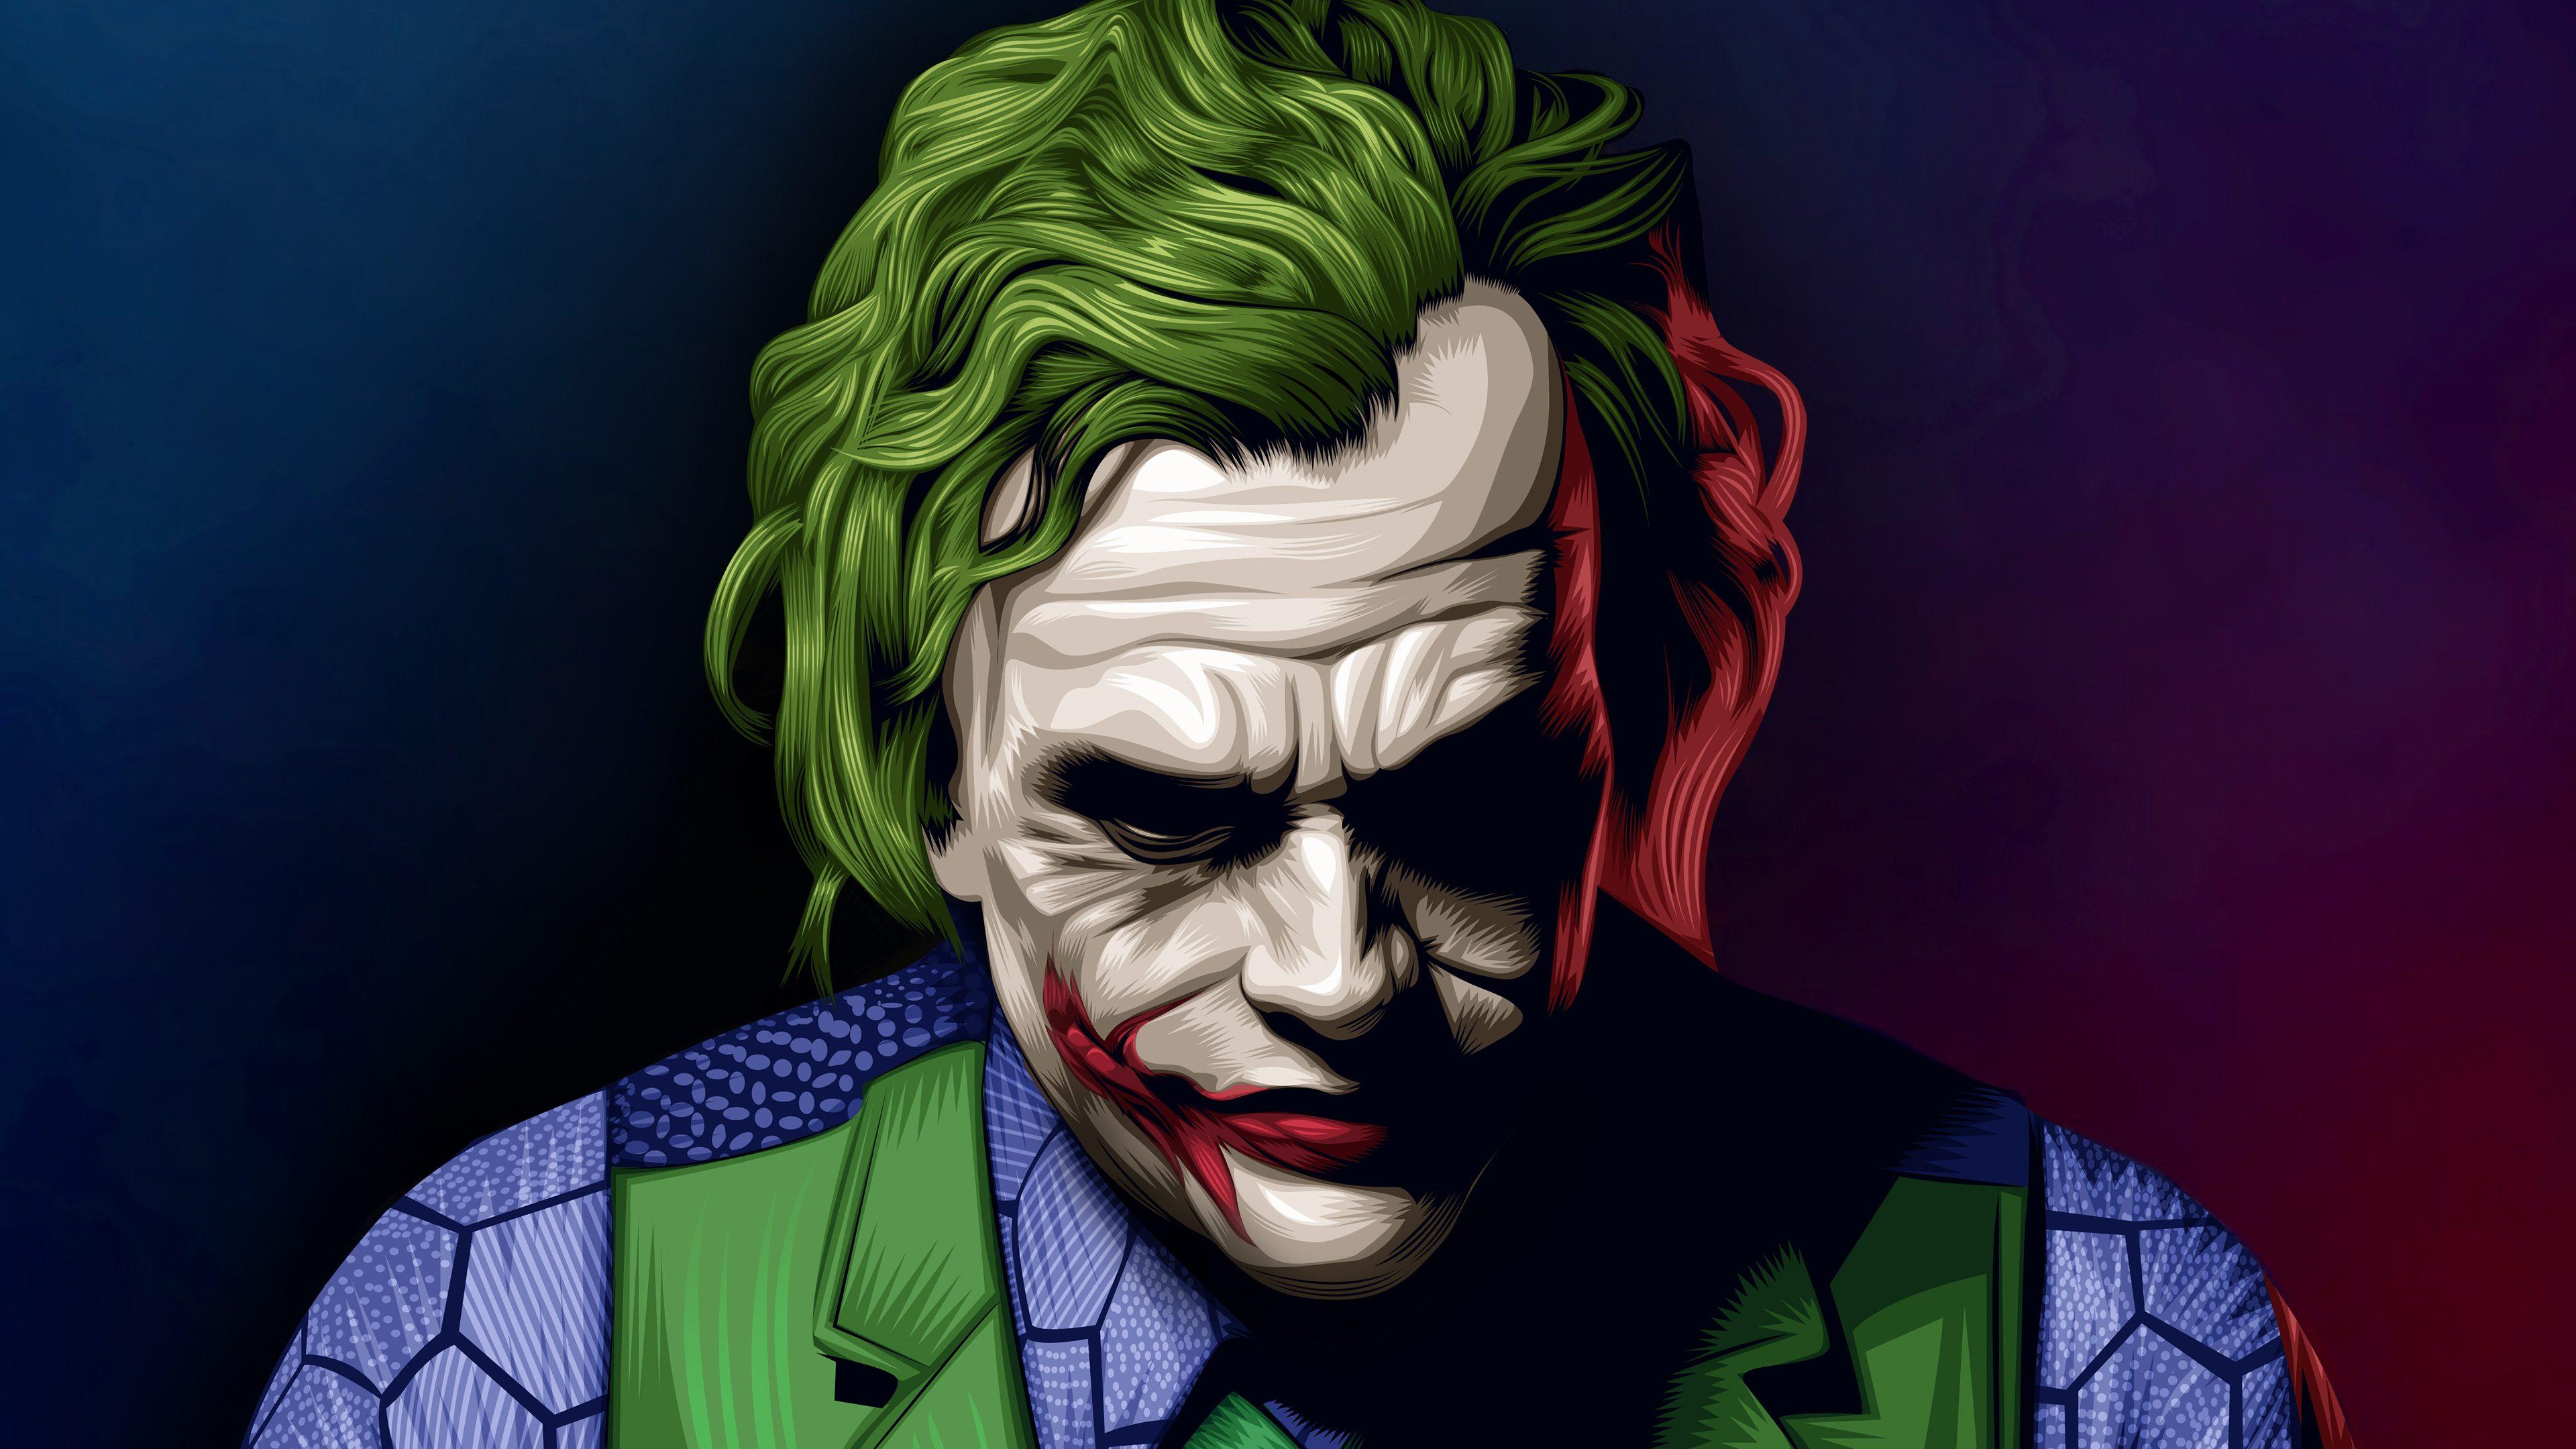 Joker Heath Ledger Illustration Artwork 4K Wallpaper